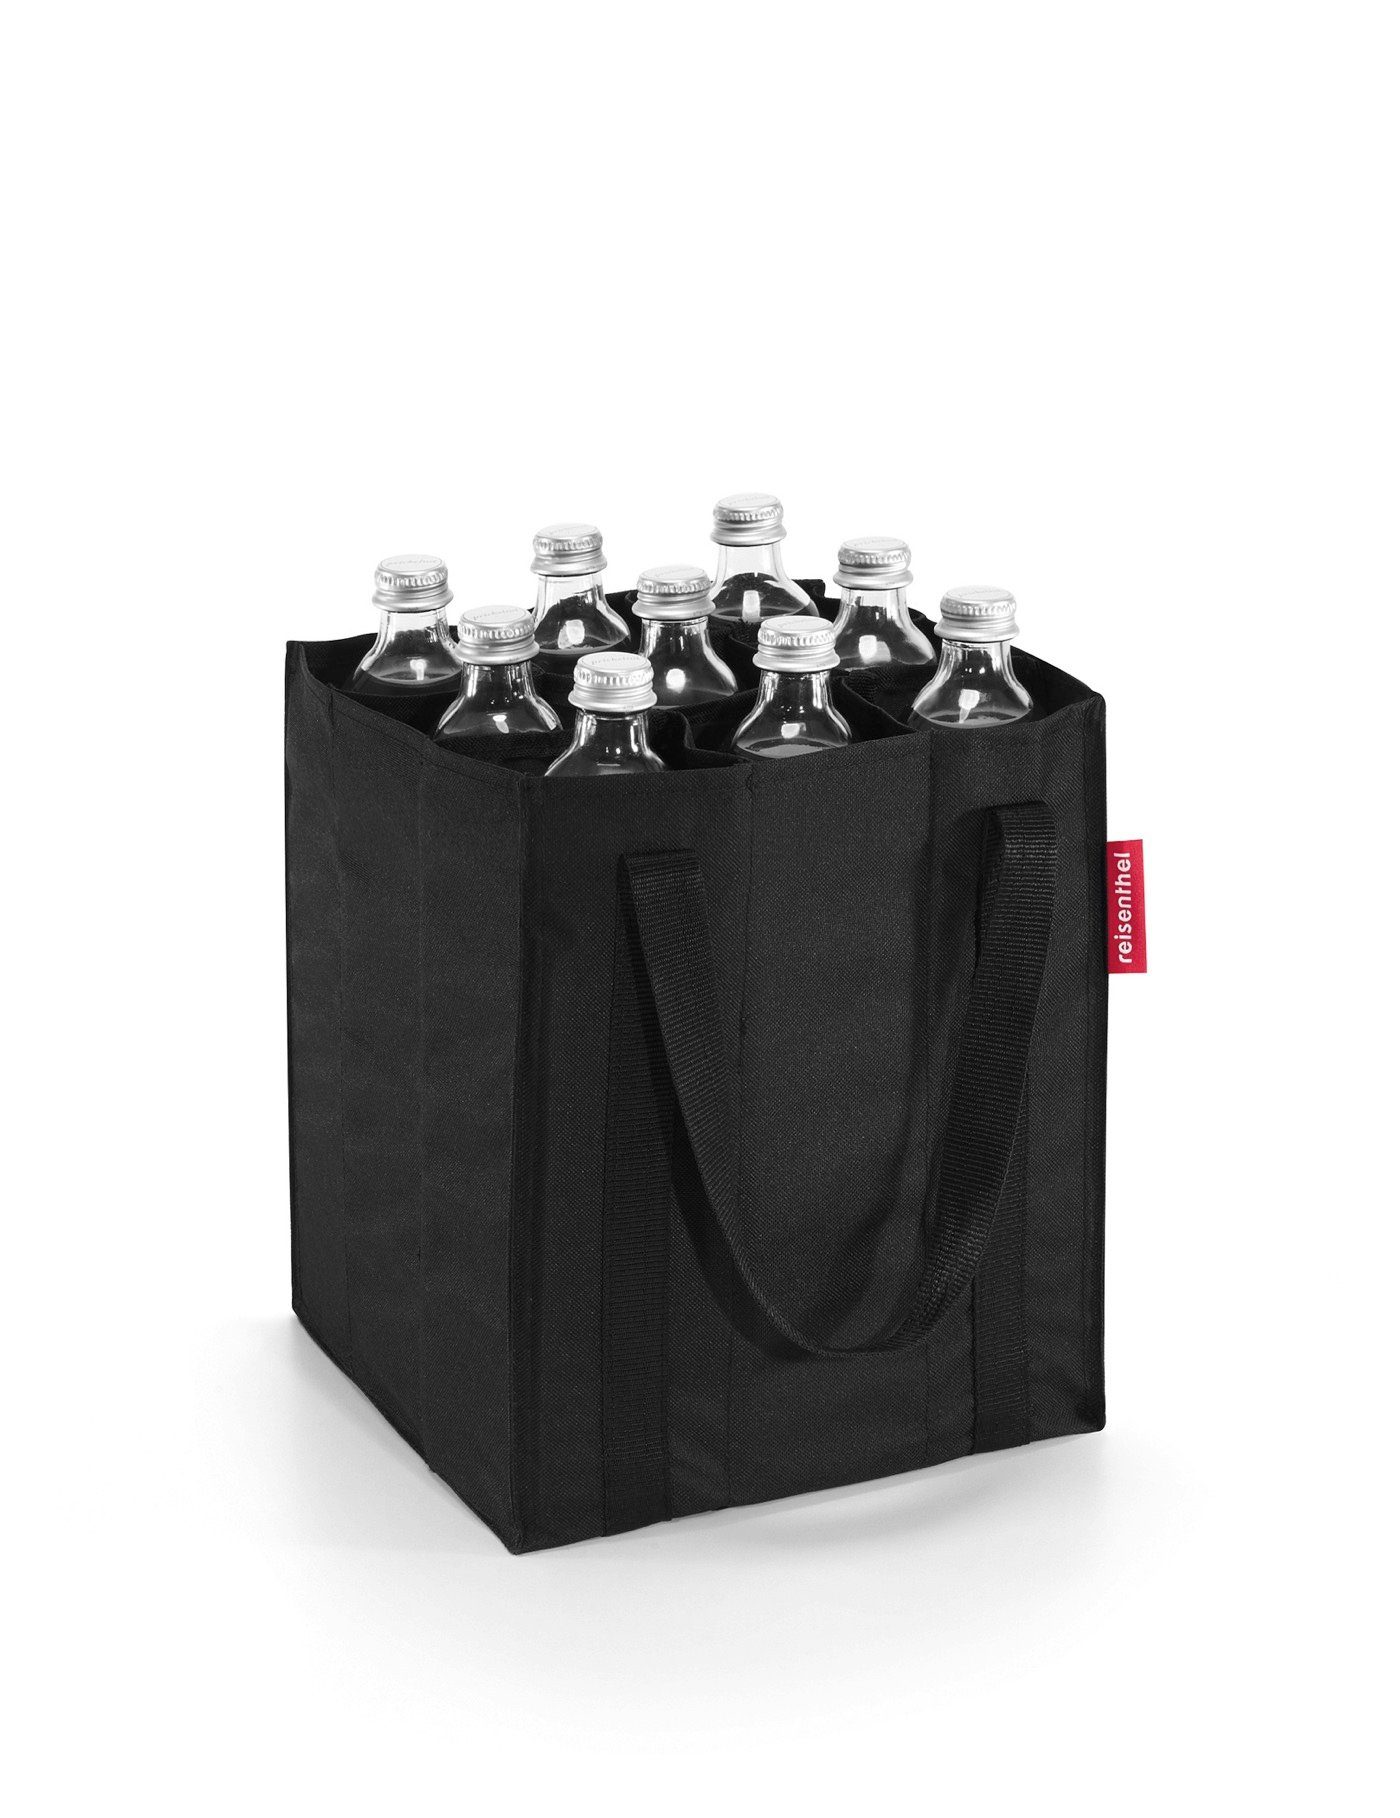 REISENTHEL® Flaschenkorb bottlebag, Flaschenträger Flaschentasche Flaschenkorb bottlebag Einkaufstasche black